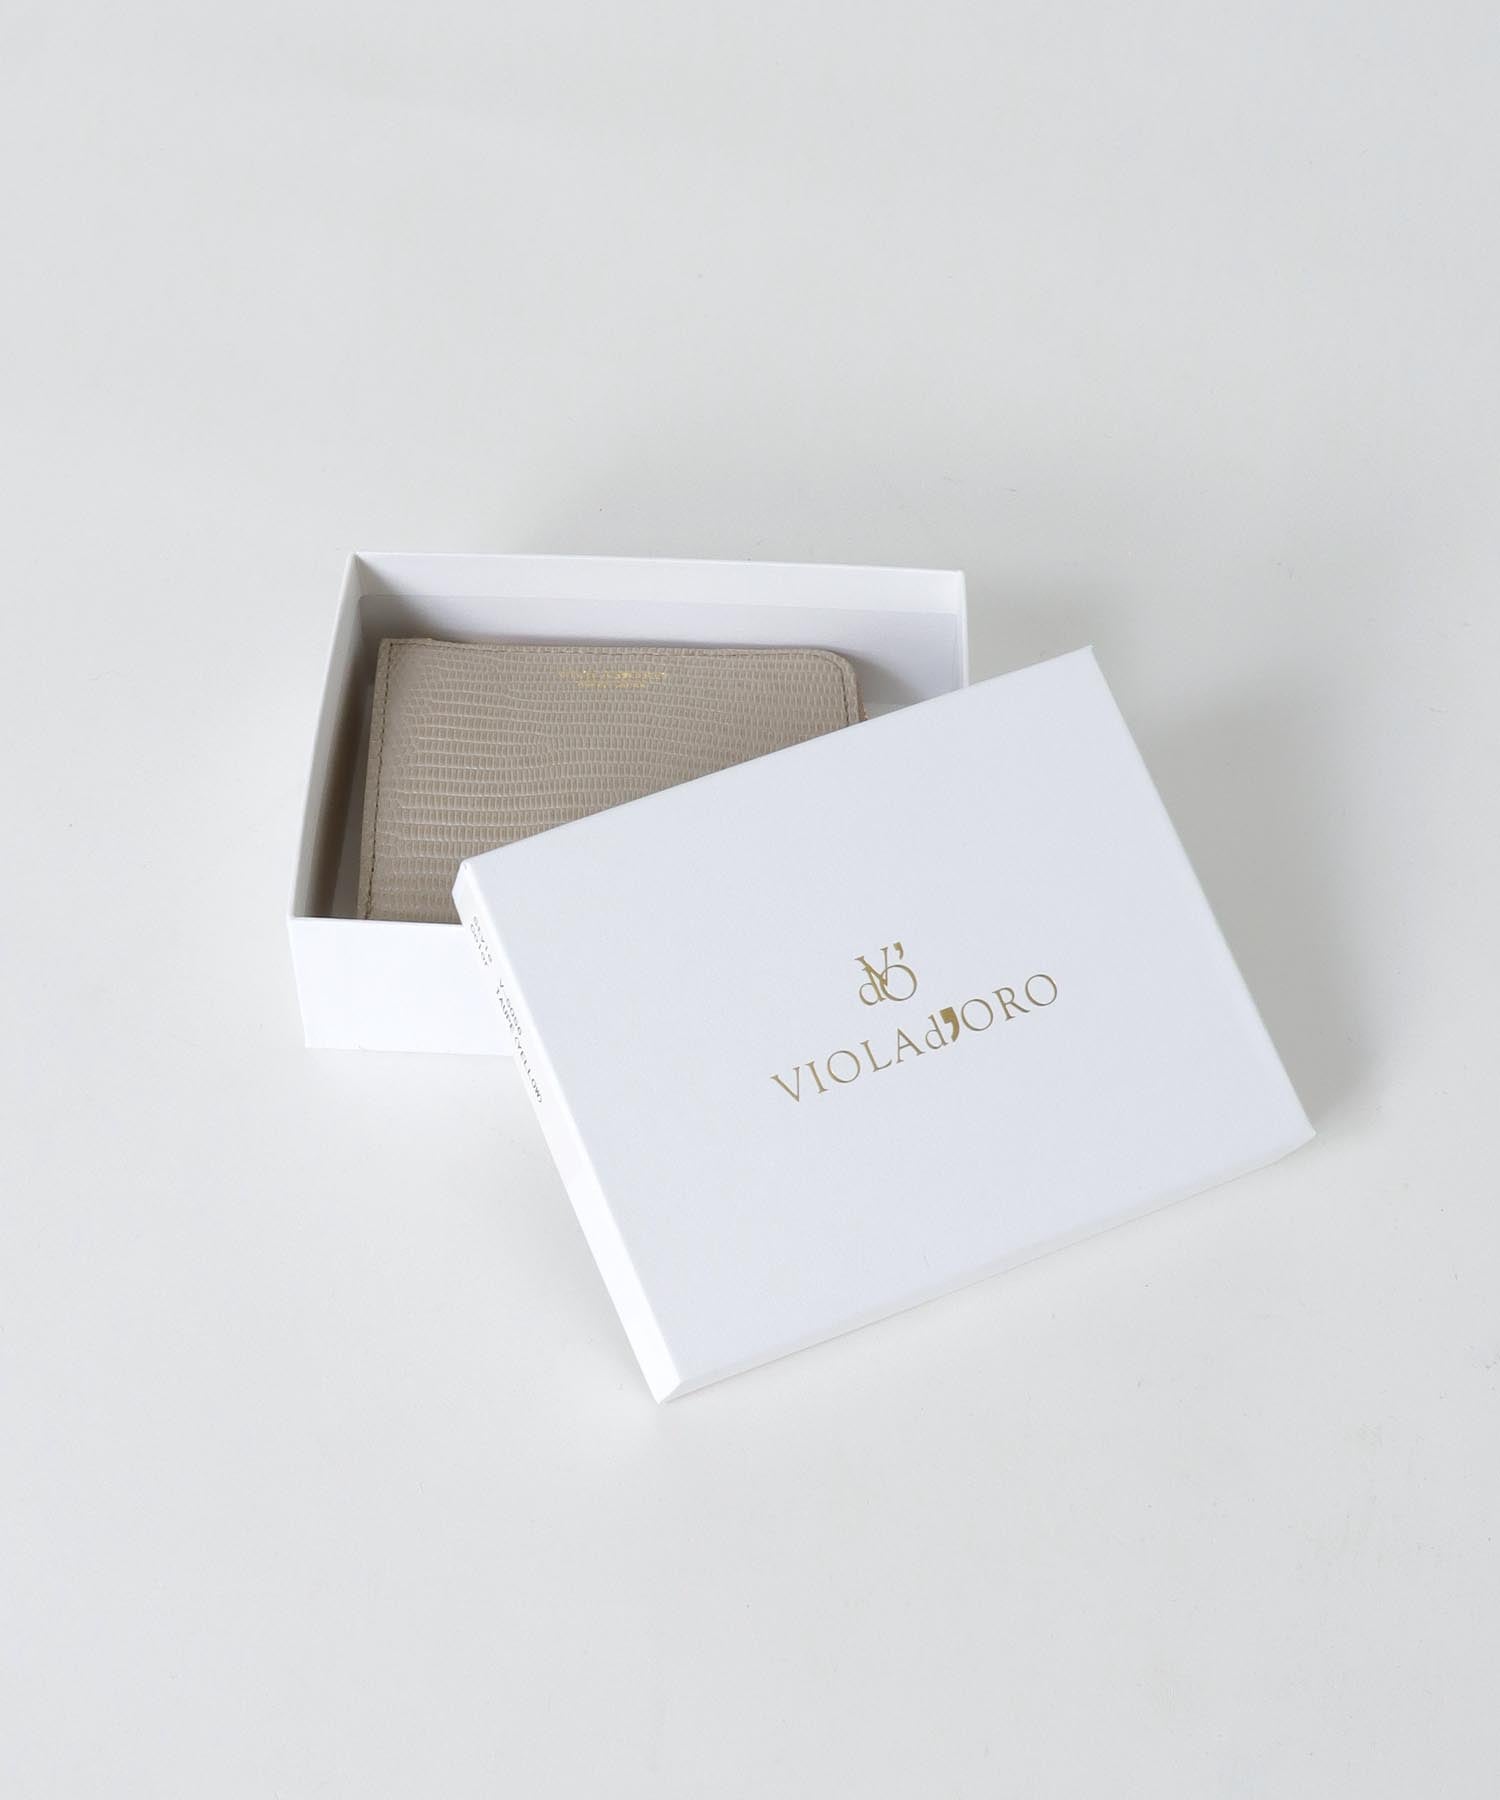 リザード型押しレザー 二つ折りL字型財布【VIOLAd'ORO/ヴィオラドーロ】